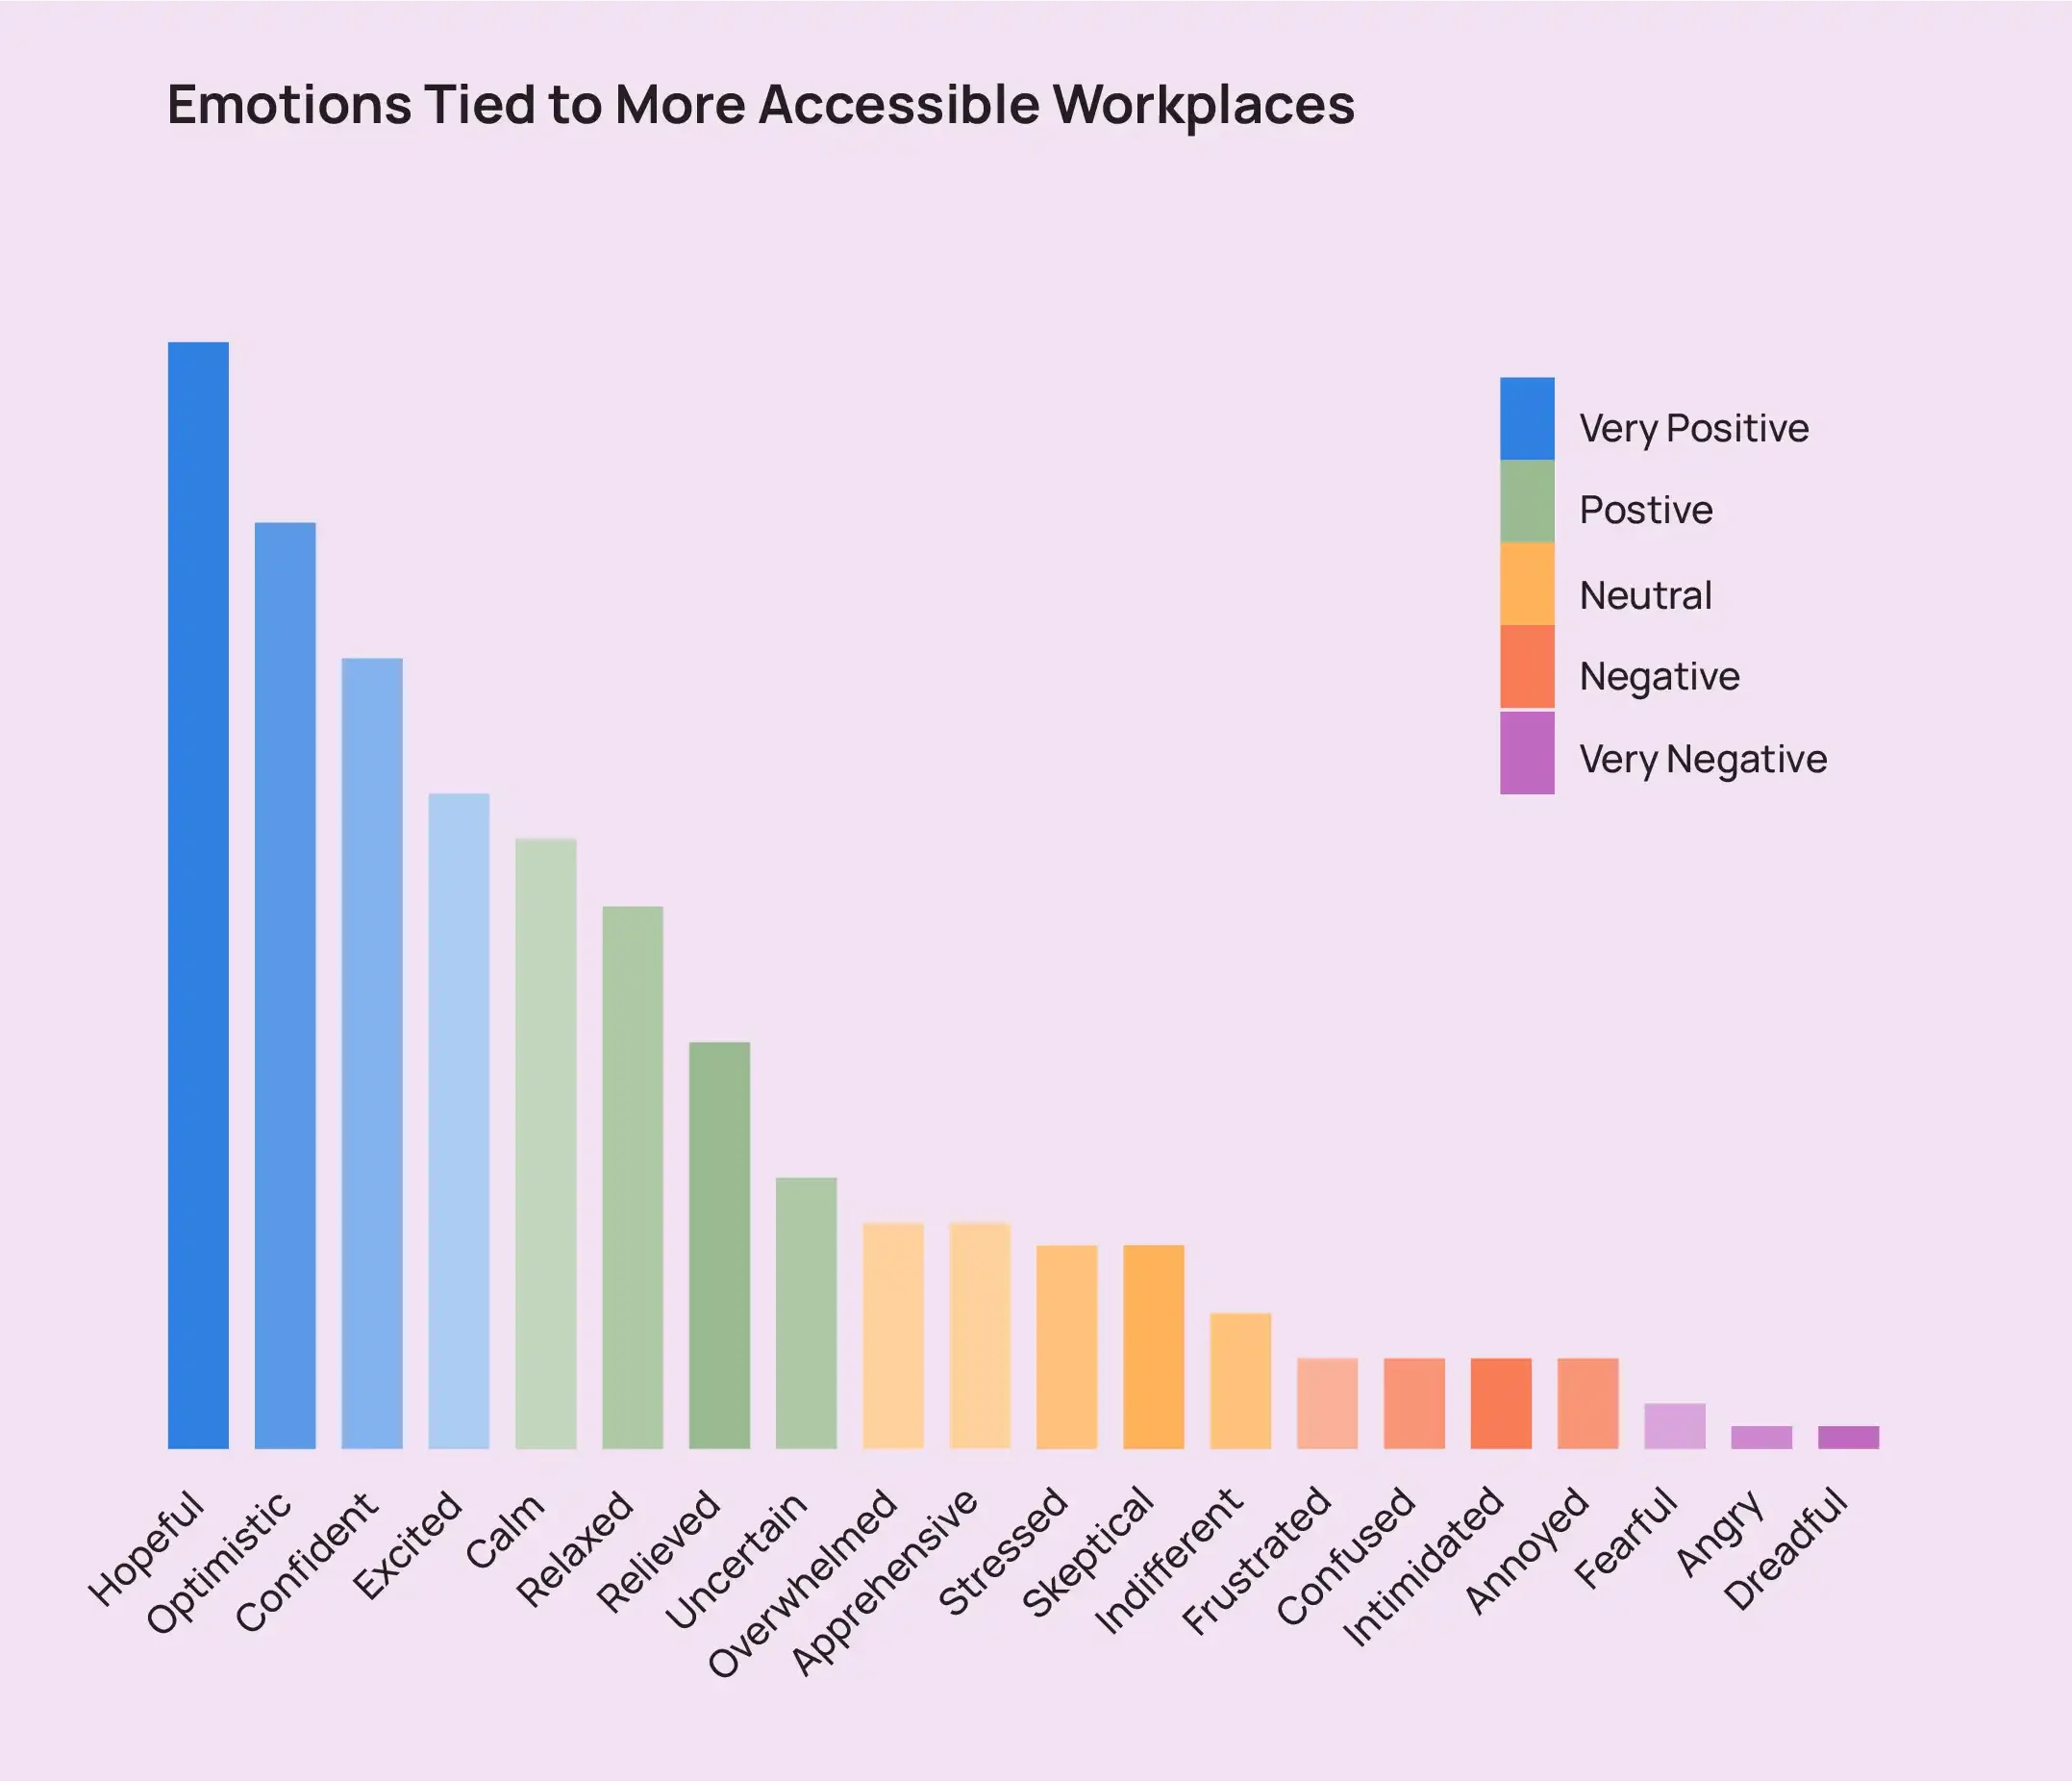 長條圖顯示與更便利的工作場所相關的情緒，包括充滿希望、樂觀和自信。